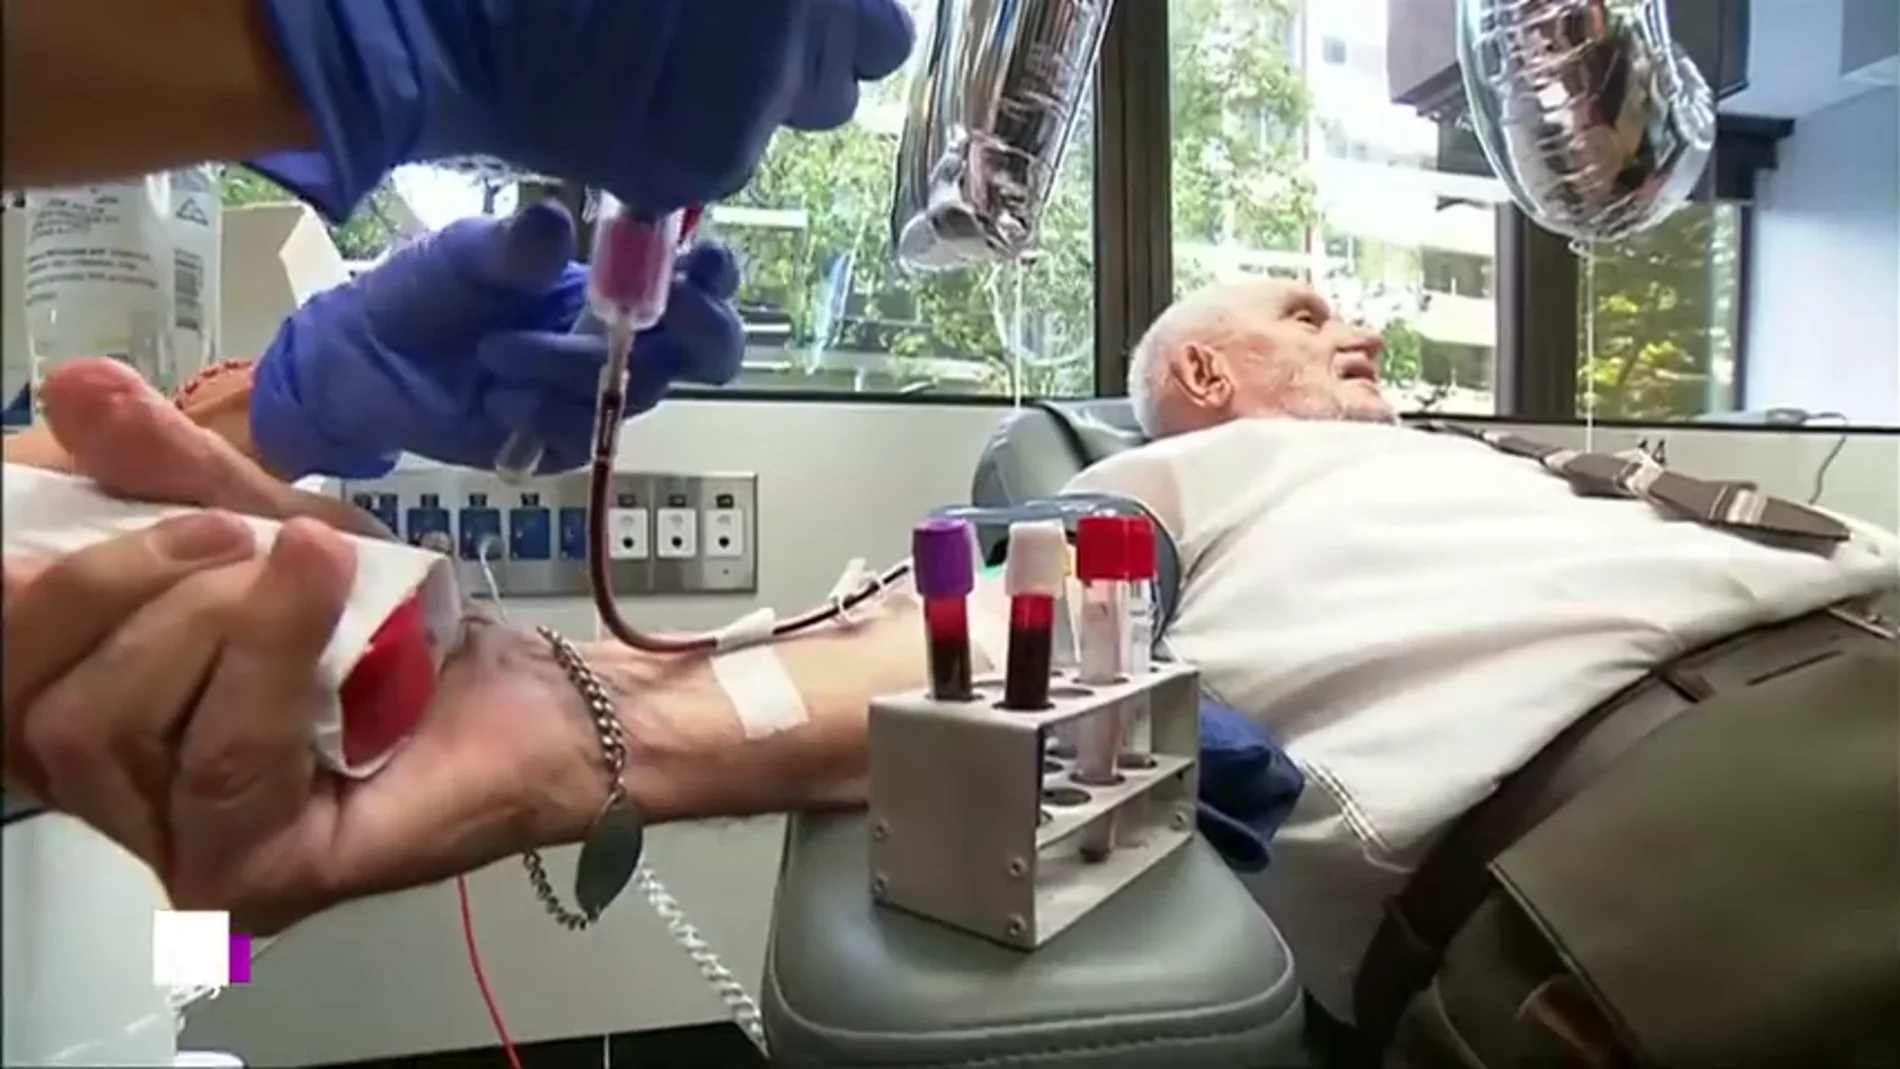 James Harrison, 'el hombre del brazo dorado': más de 1.170 donaciones de sangre a sus 81 años